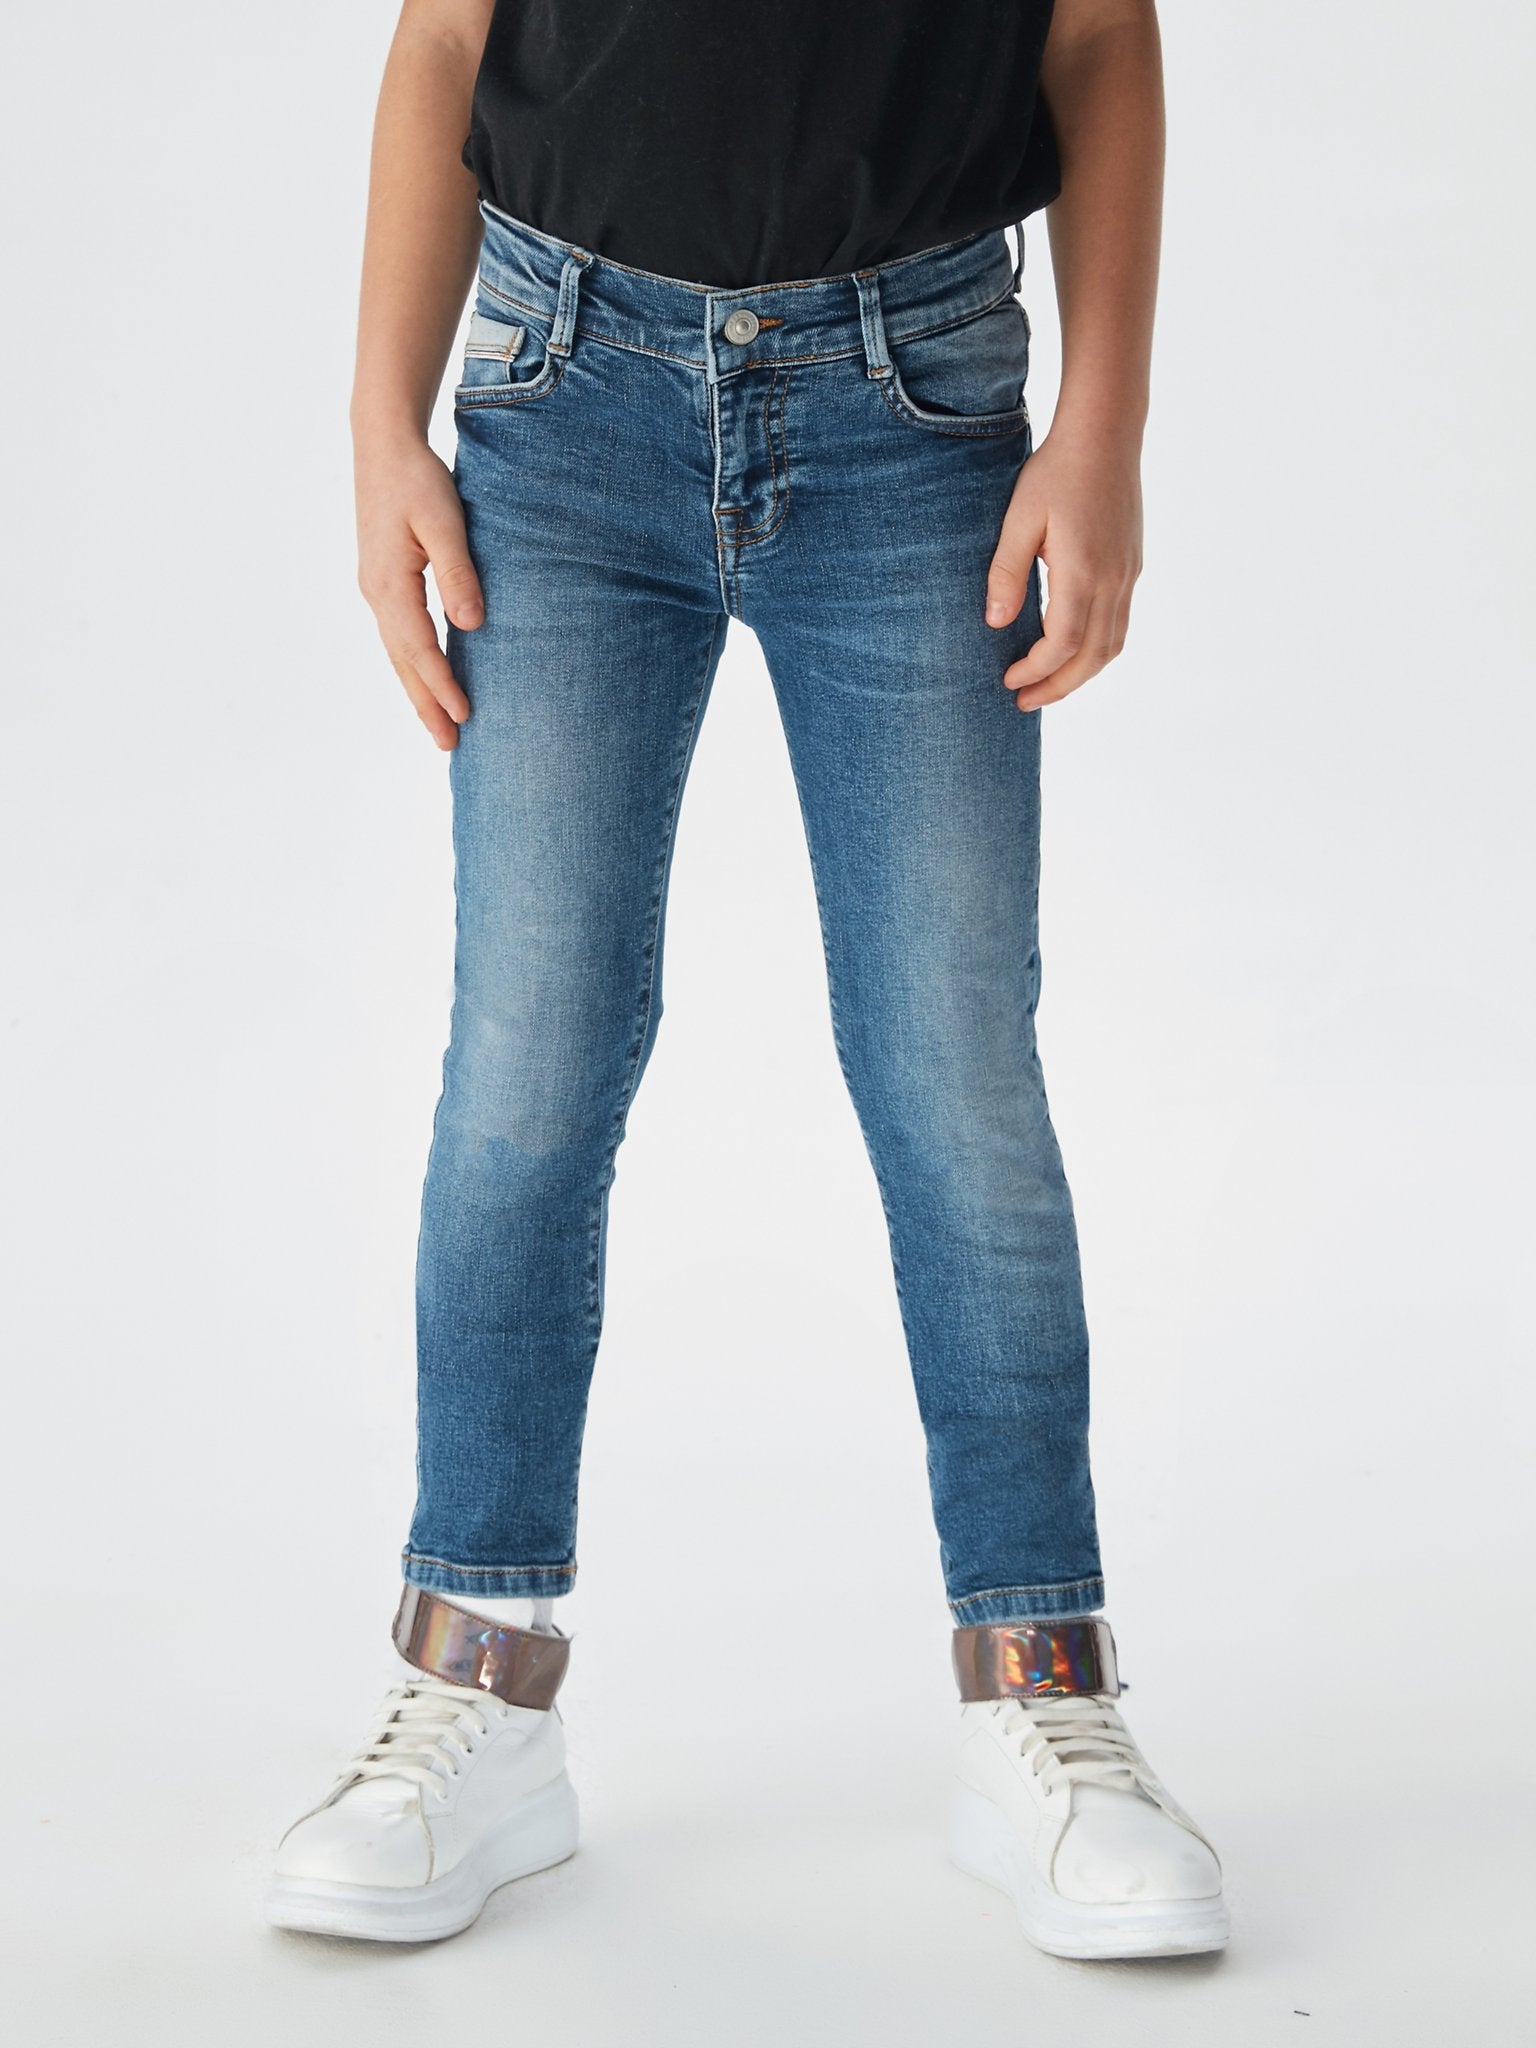 Jongens Jeans NEW COOPER BJUANA WASH van LTB in de kleur JUANA WASH in maat 176.